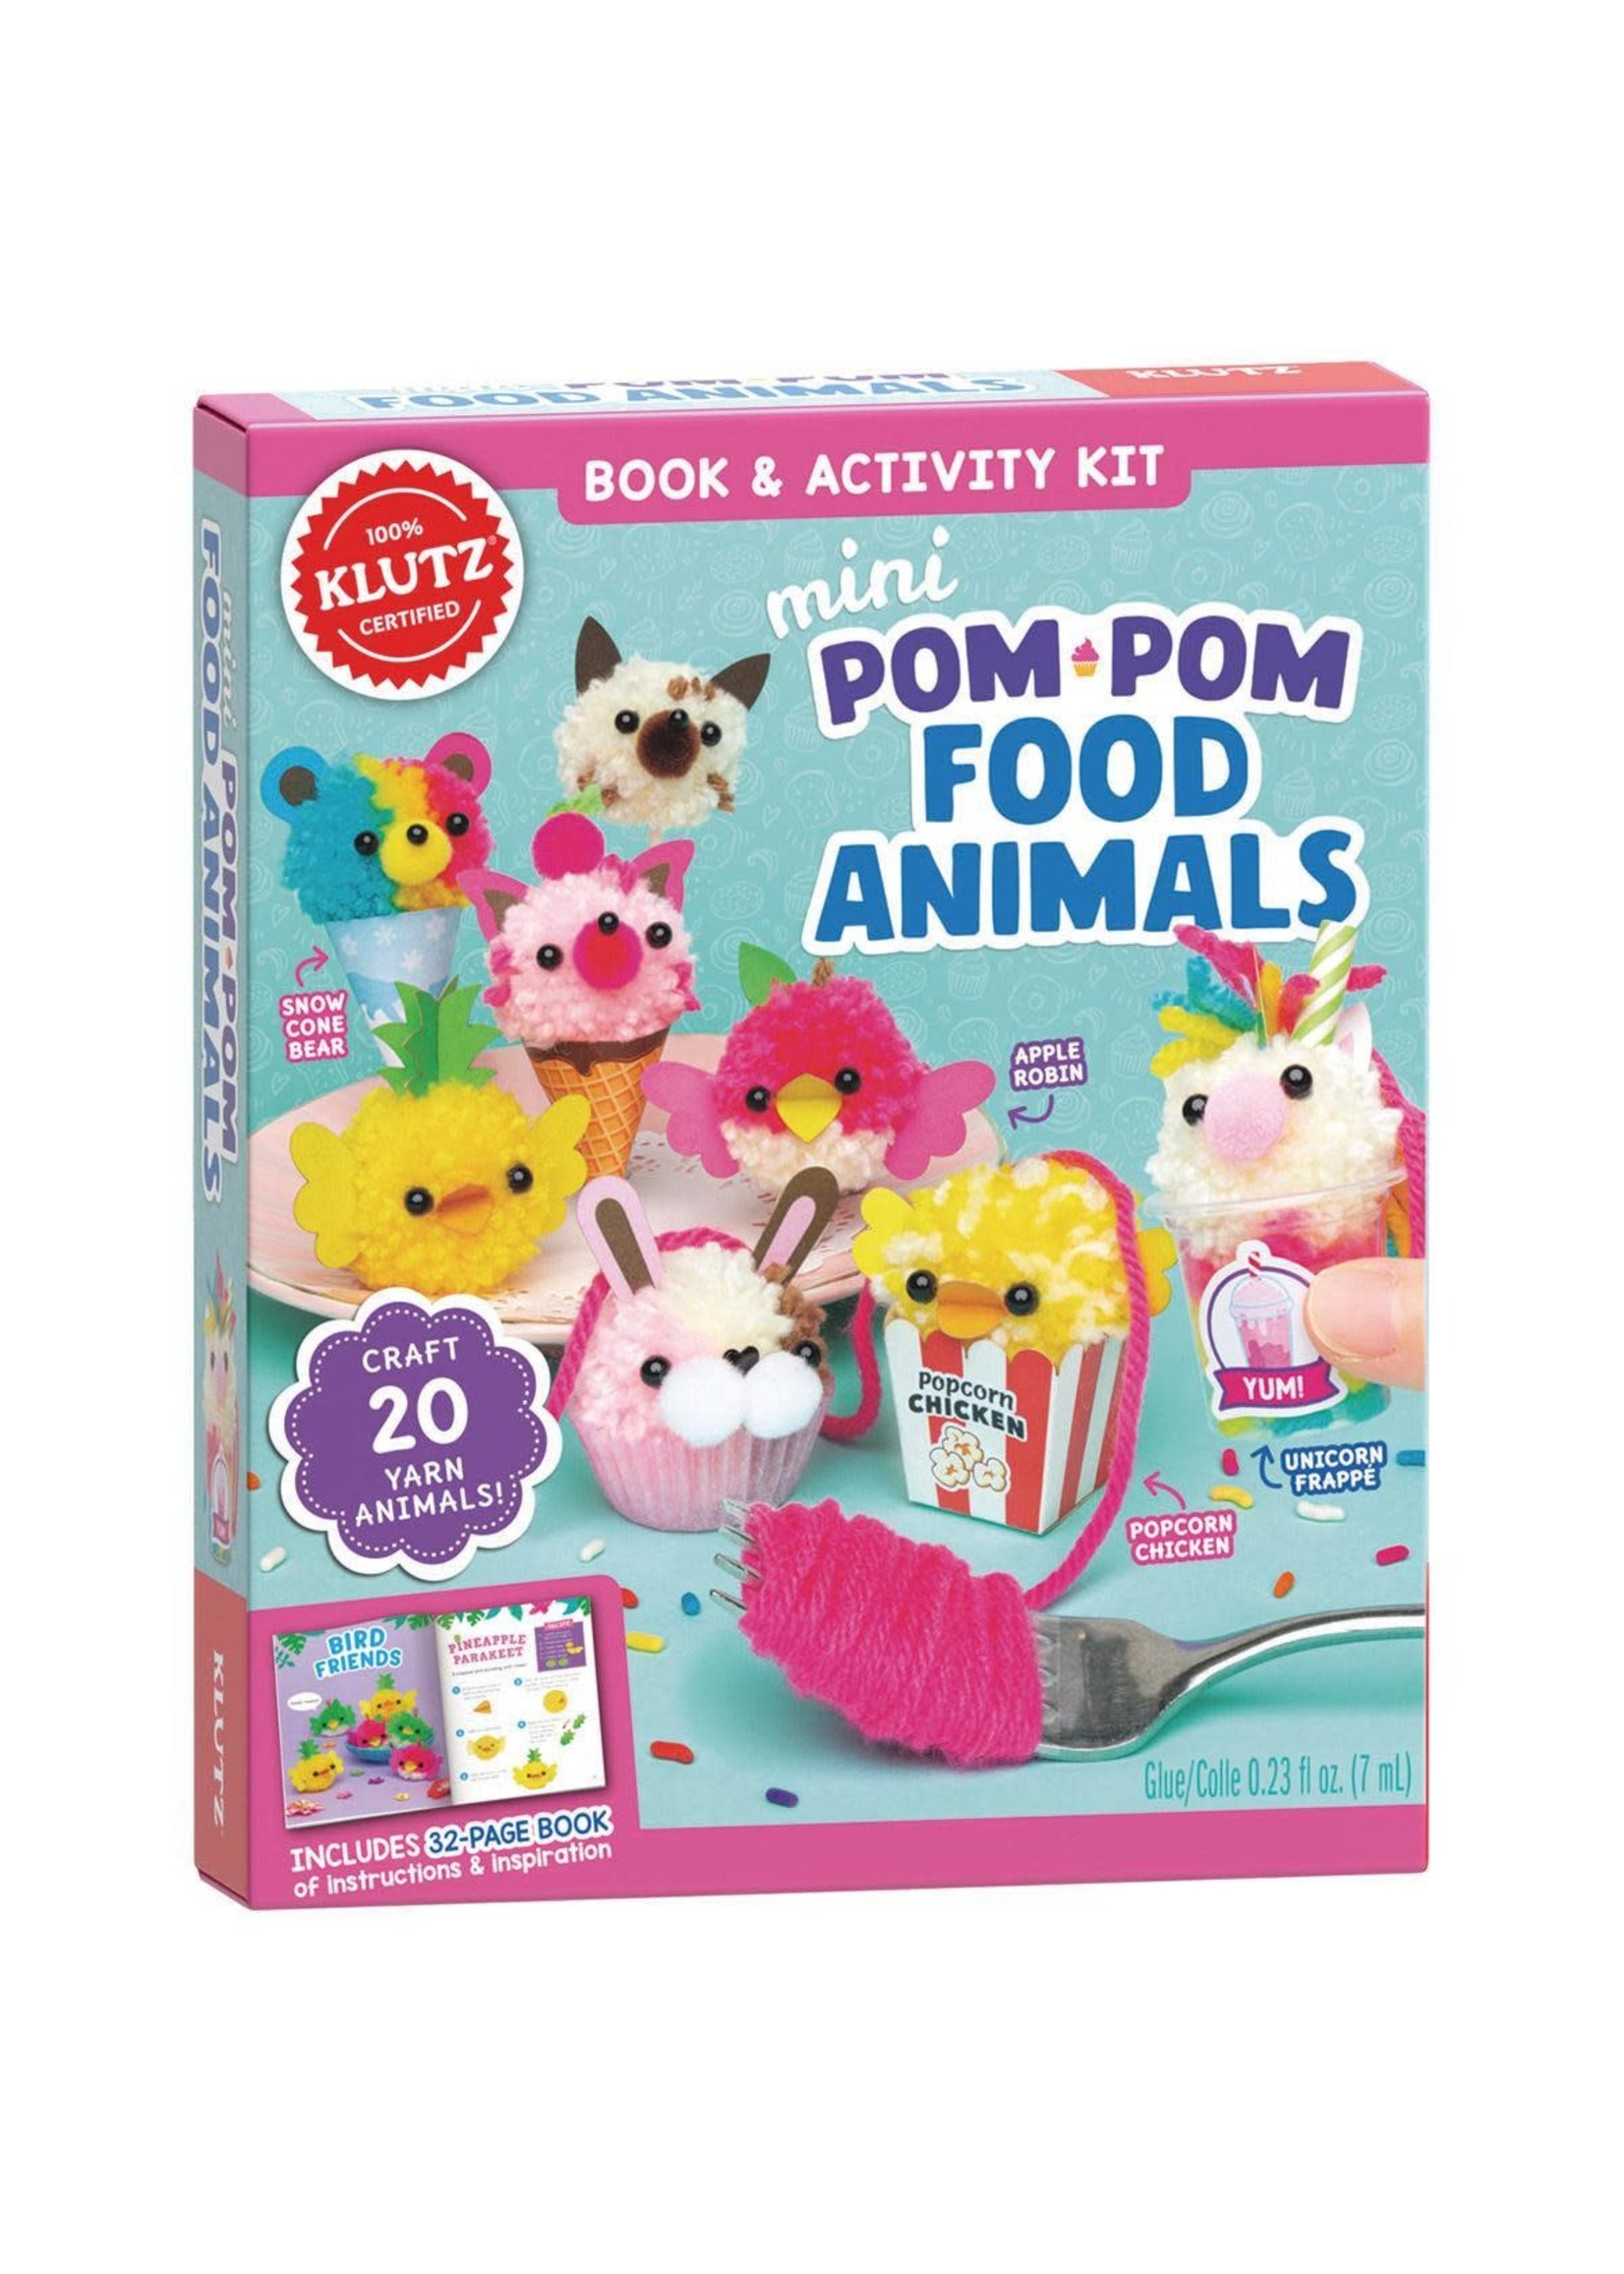 Mini Pom-Pom Food Animals by Editors of Klutz